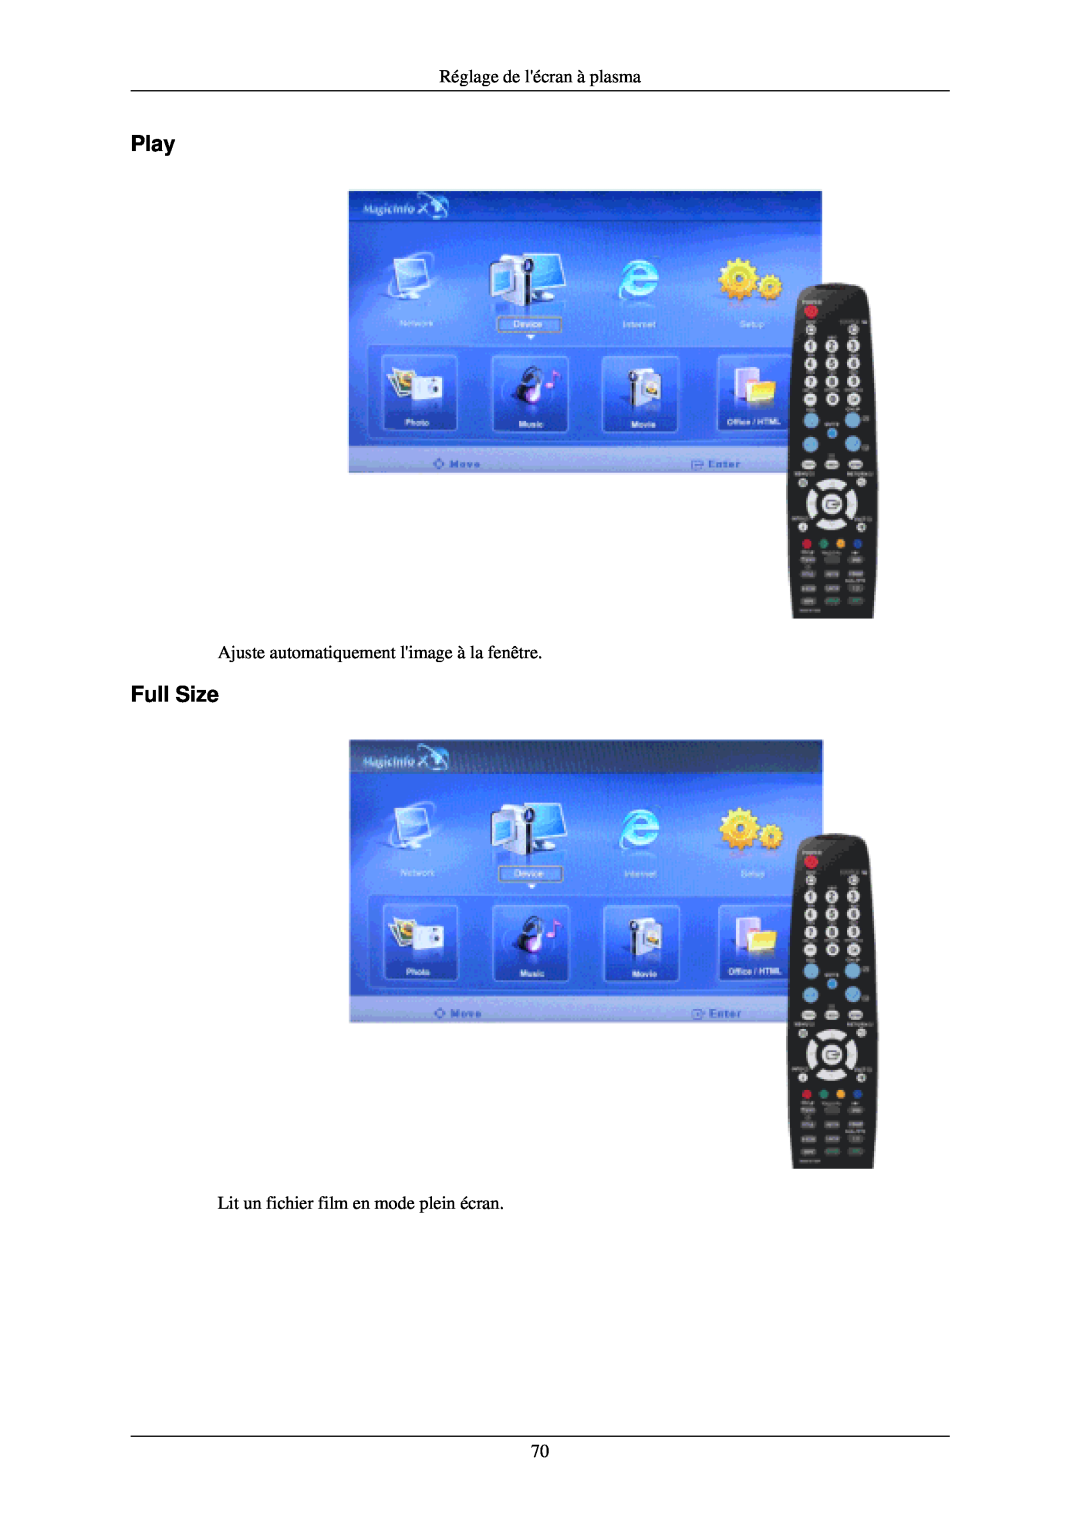 Samsung PH50KLPLBC/EN manual Play, Full Size, Réglage de lécran à plasma, Ajuste automatiquement limage à la fenêtre 